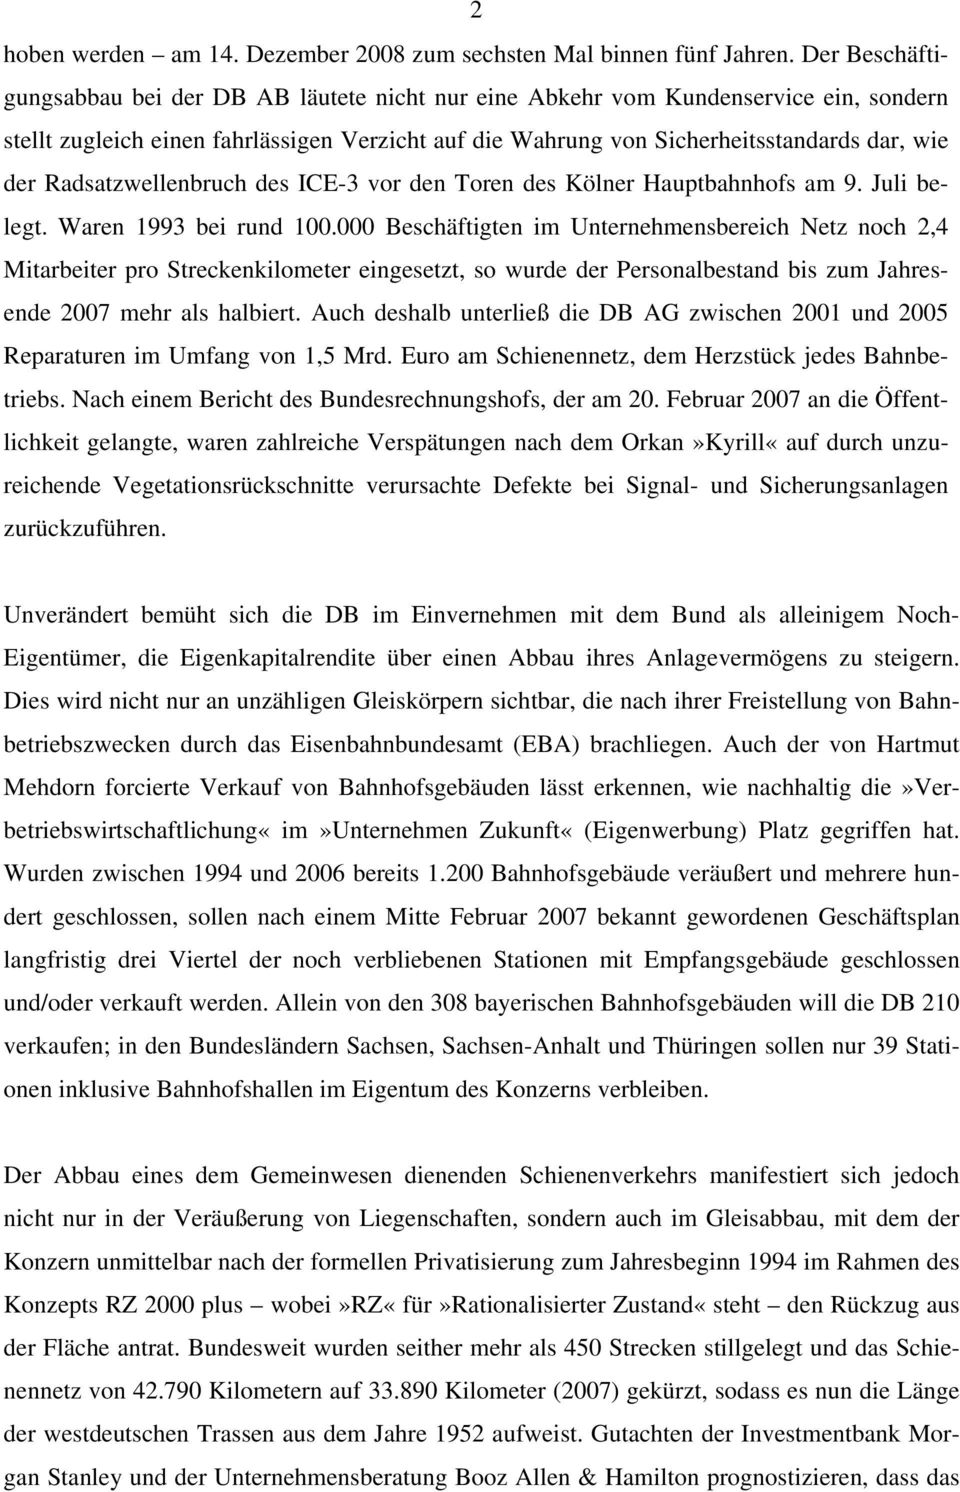 Radsatzwellenbruch des ICE-3 vor den Toren des Kölner Hauptbahnhofs am 9. Juli belegt. Waren 1993 bei rund 100.